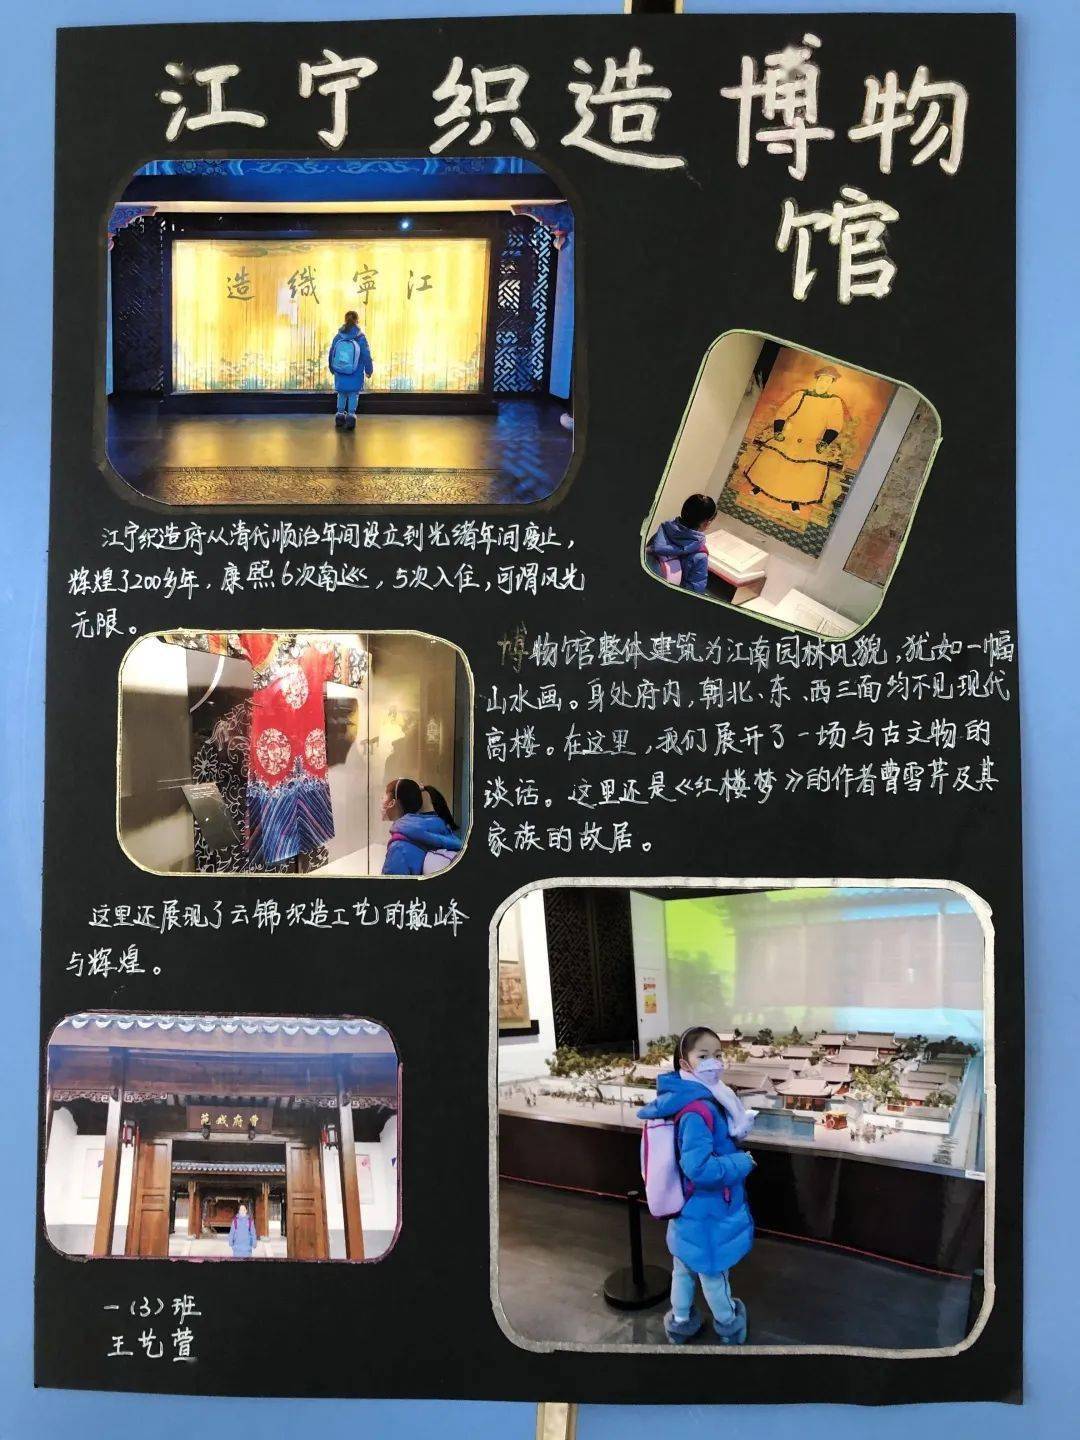 孩子们不仅读了文字书籍,还走进南京的各大博物馆,探寻古城记忆,探索